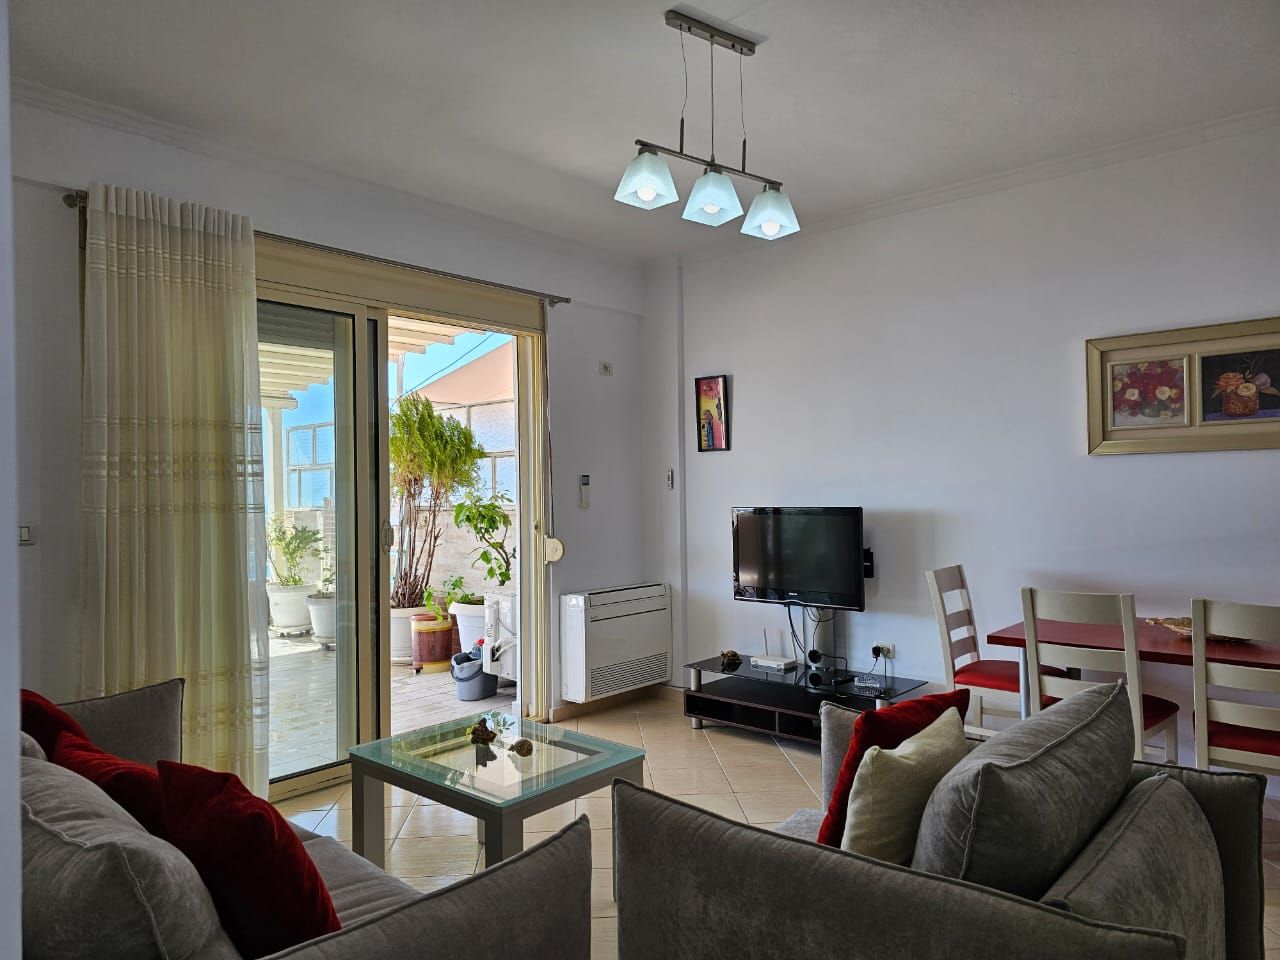 Immobili In Albania A Saranda in vendita con due camere da letto in una residenza moderna con splendida vista panoramica sul mare